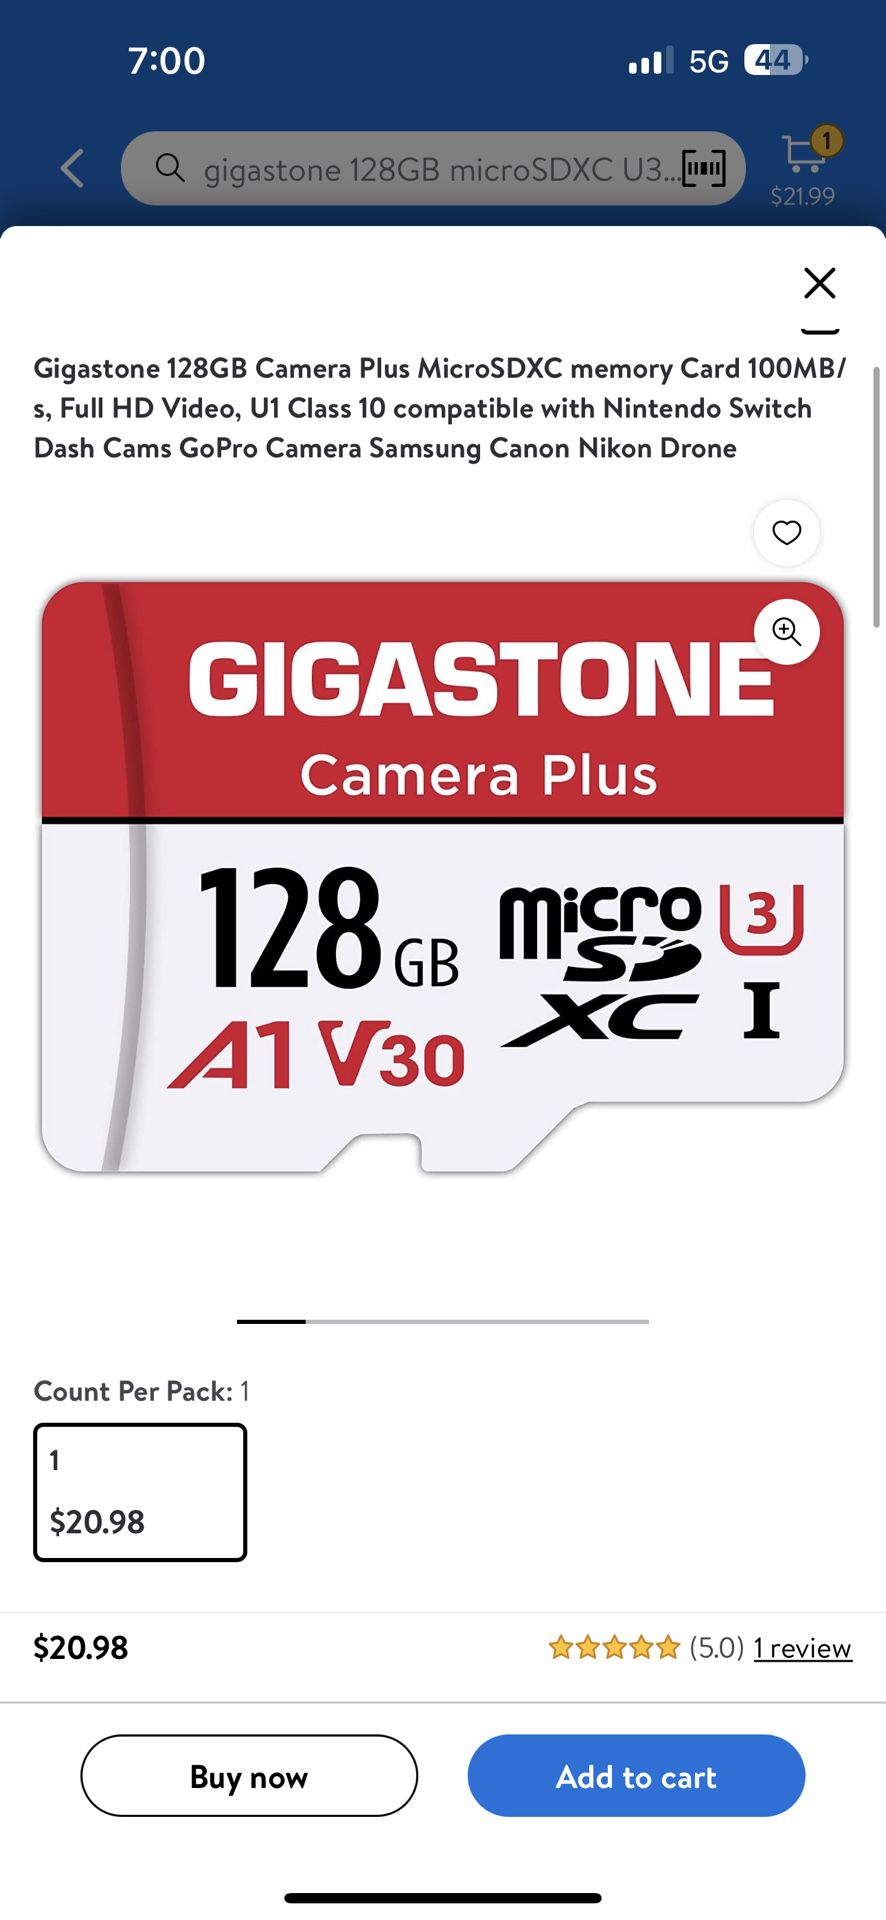 Gigastone 128GB Camera Plus